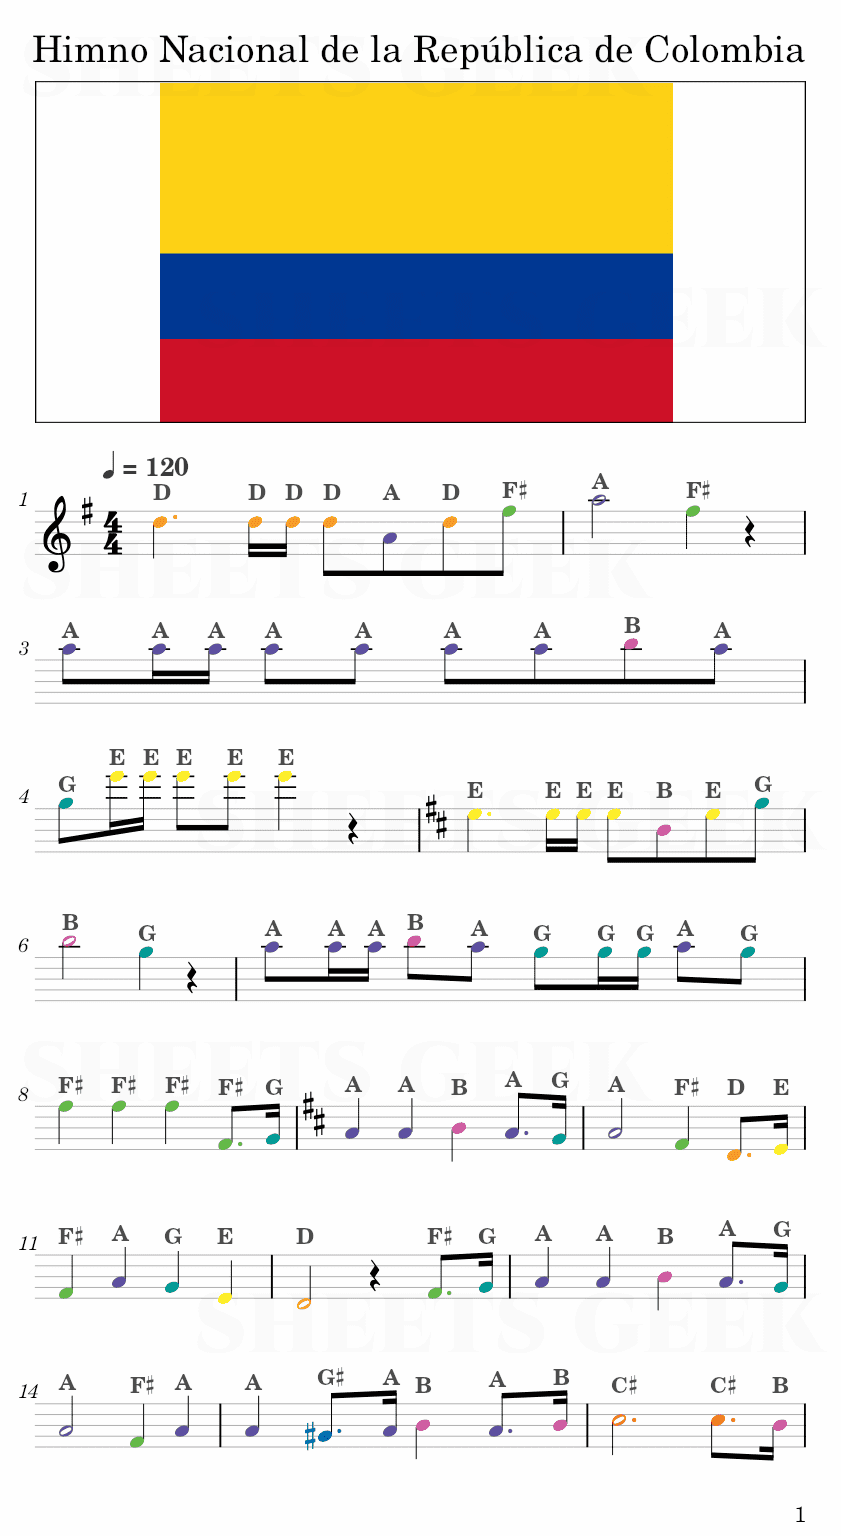 Himno Nacional de la República de Colombia - Colombia National Anthem Easy Sheet Music Free for piano, keyboard, flute, violin, sax, cello page 1